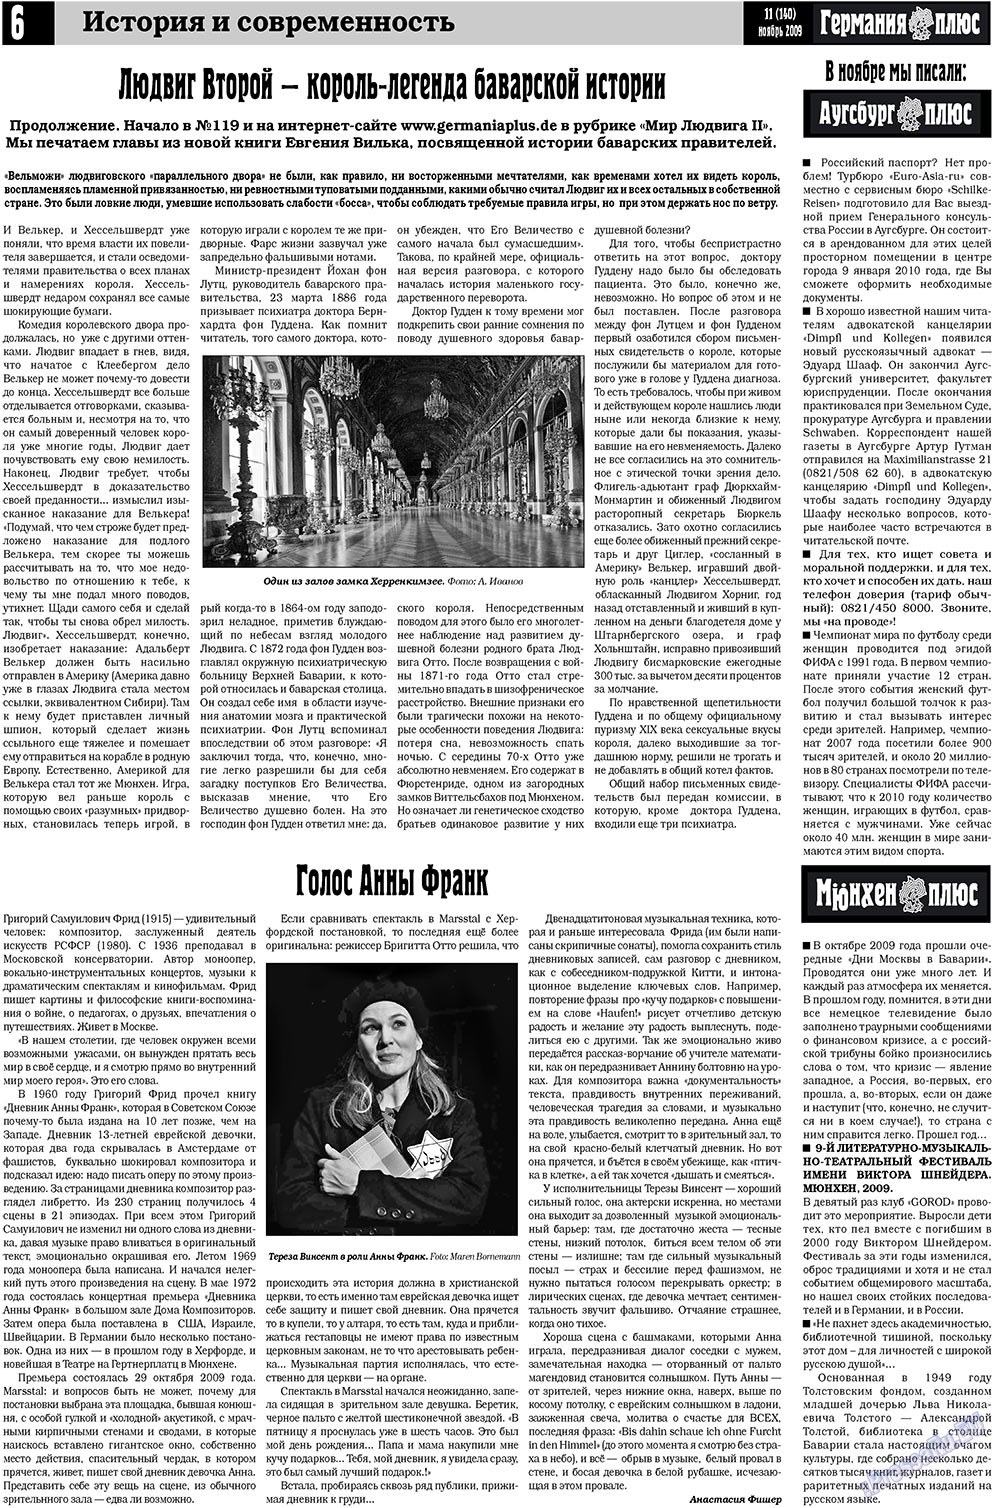 Германия плюс (газета). 2009 год, номер 11, стр. 6